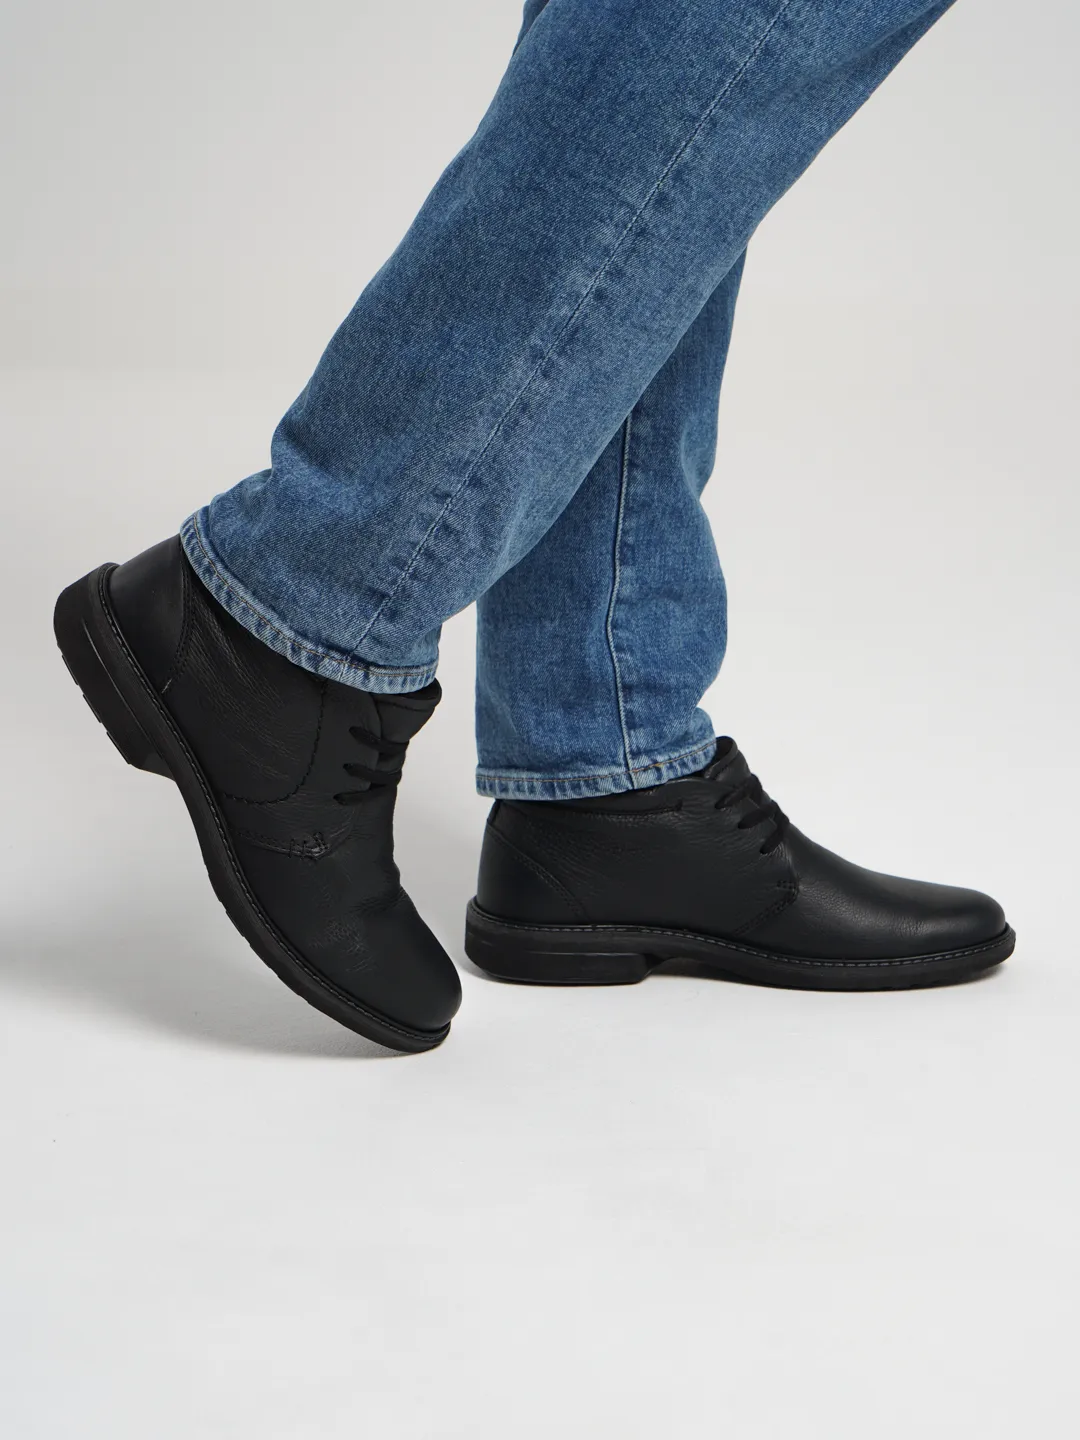 Ботинки мужские, Ecco купить по цене 12686 ₽ в интернет-магазине  KazanExpress